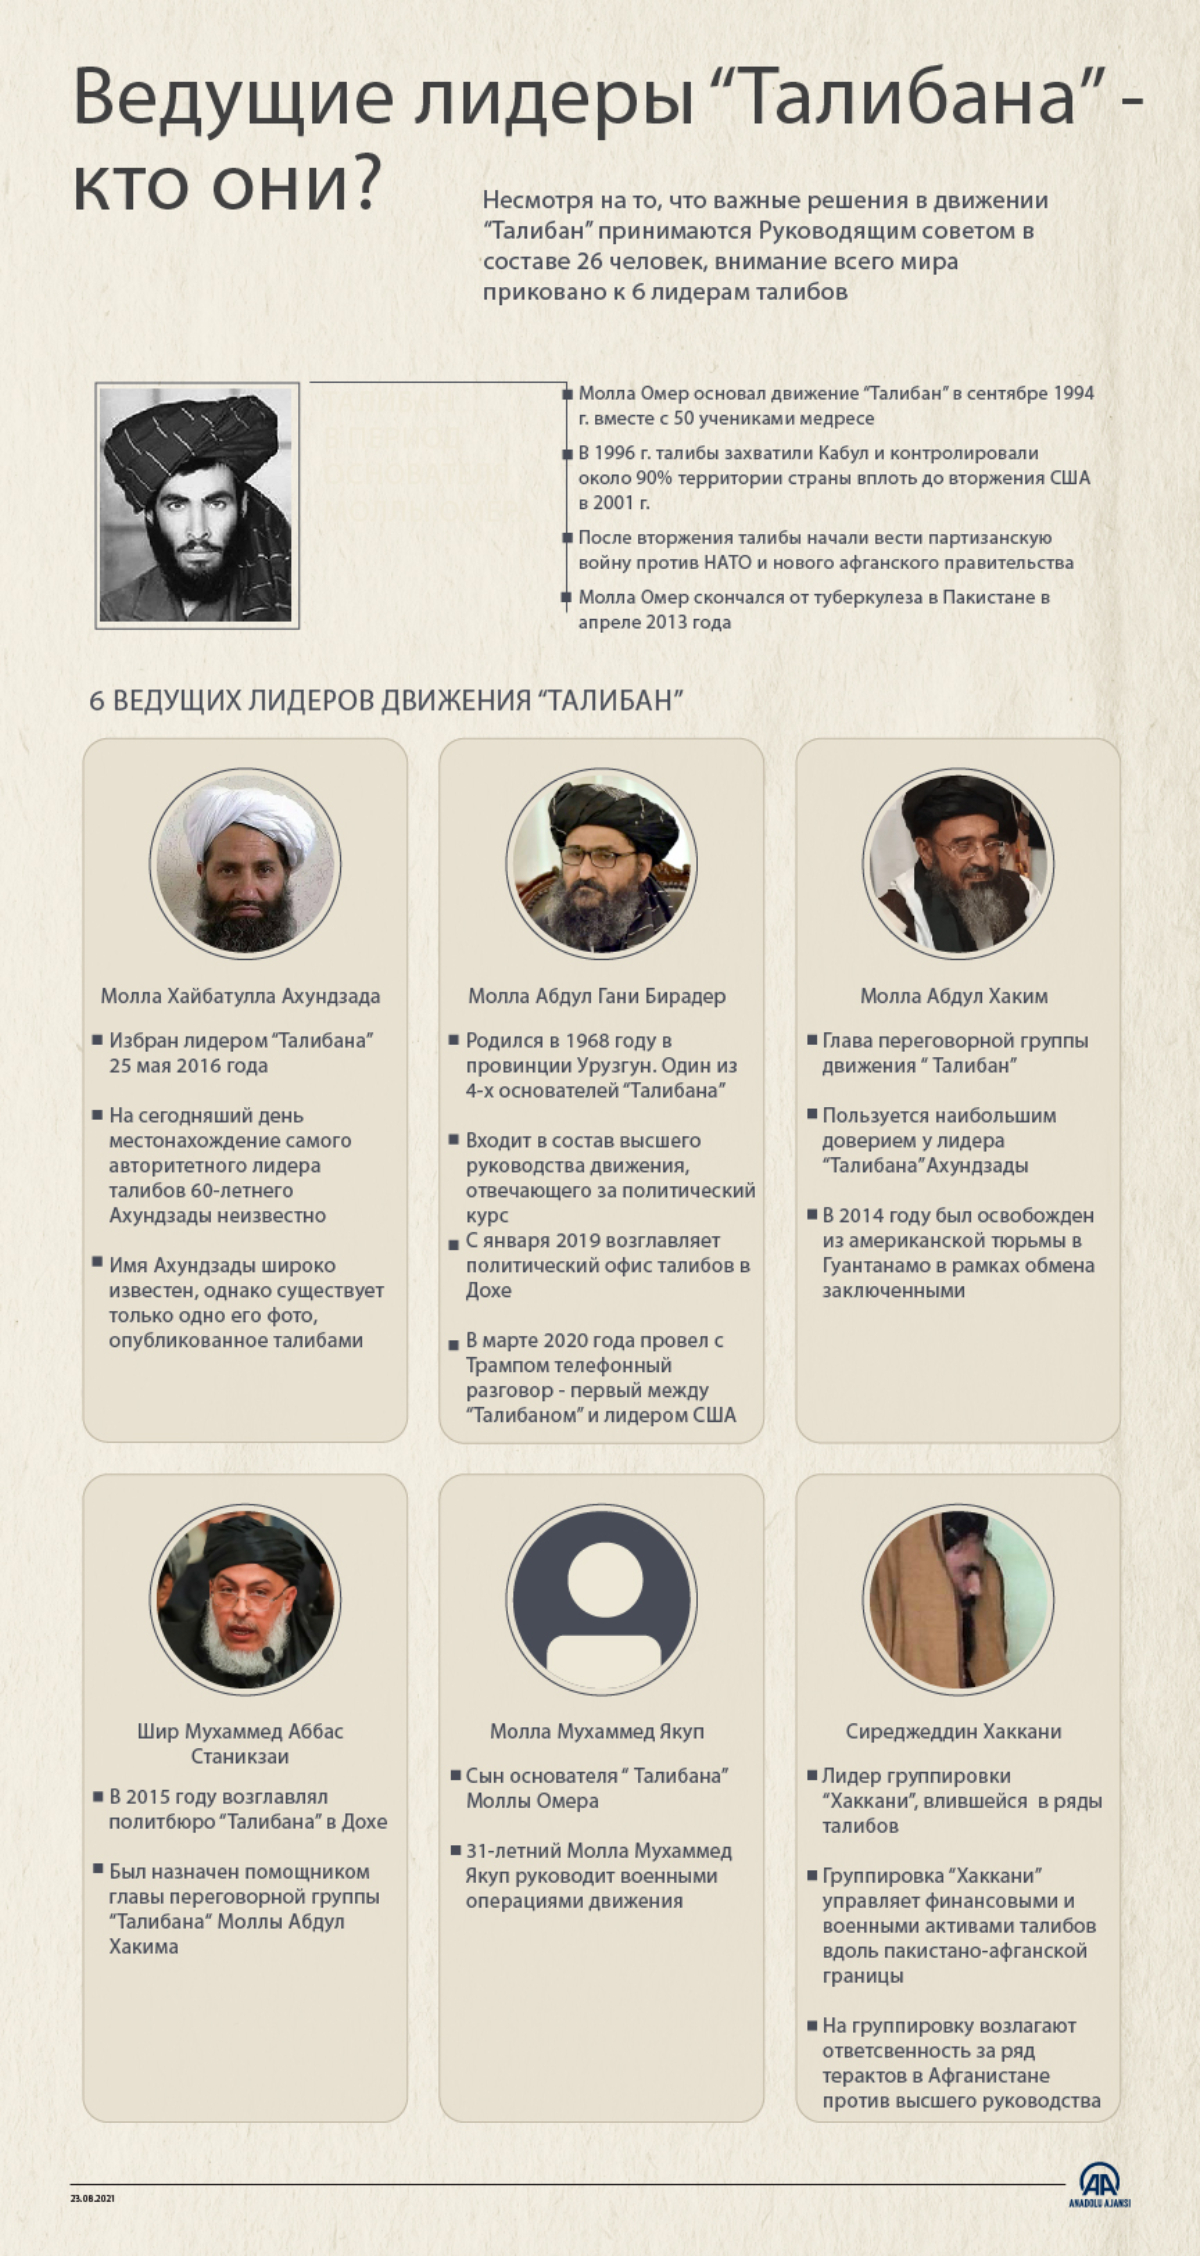 Шесть лидеров, принимающих решения в «Талибане»